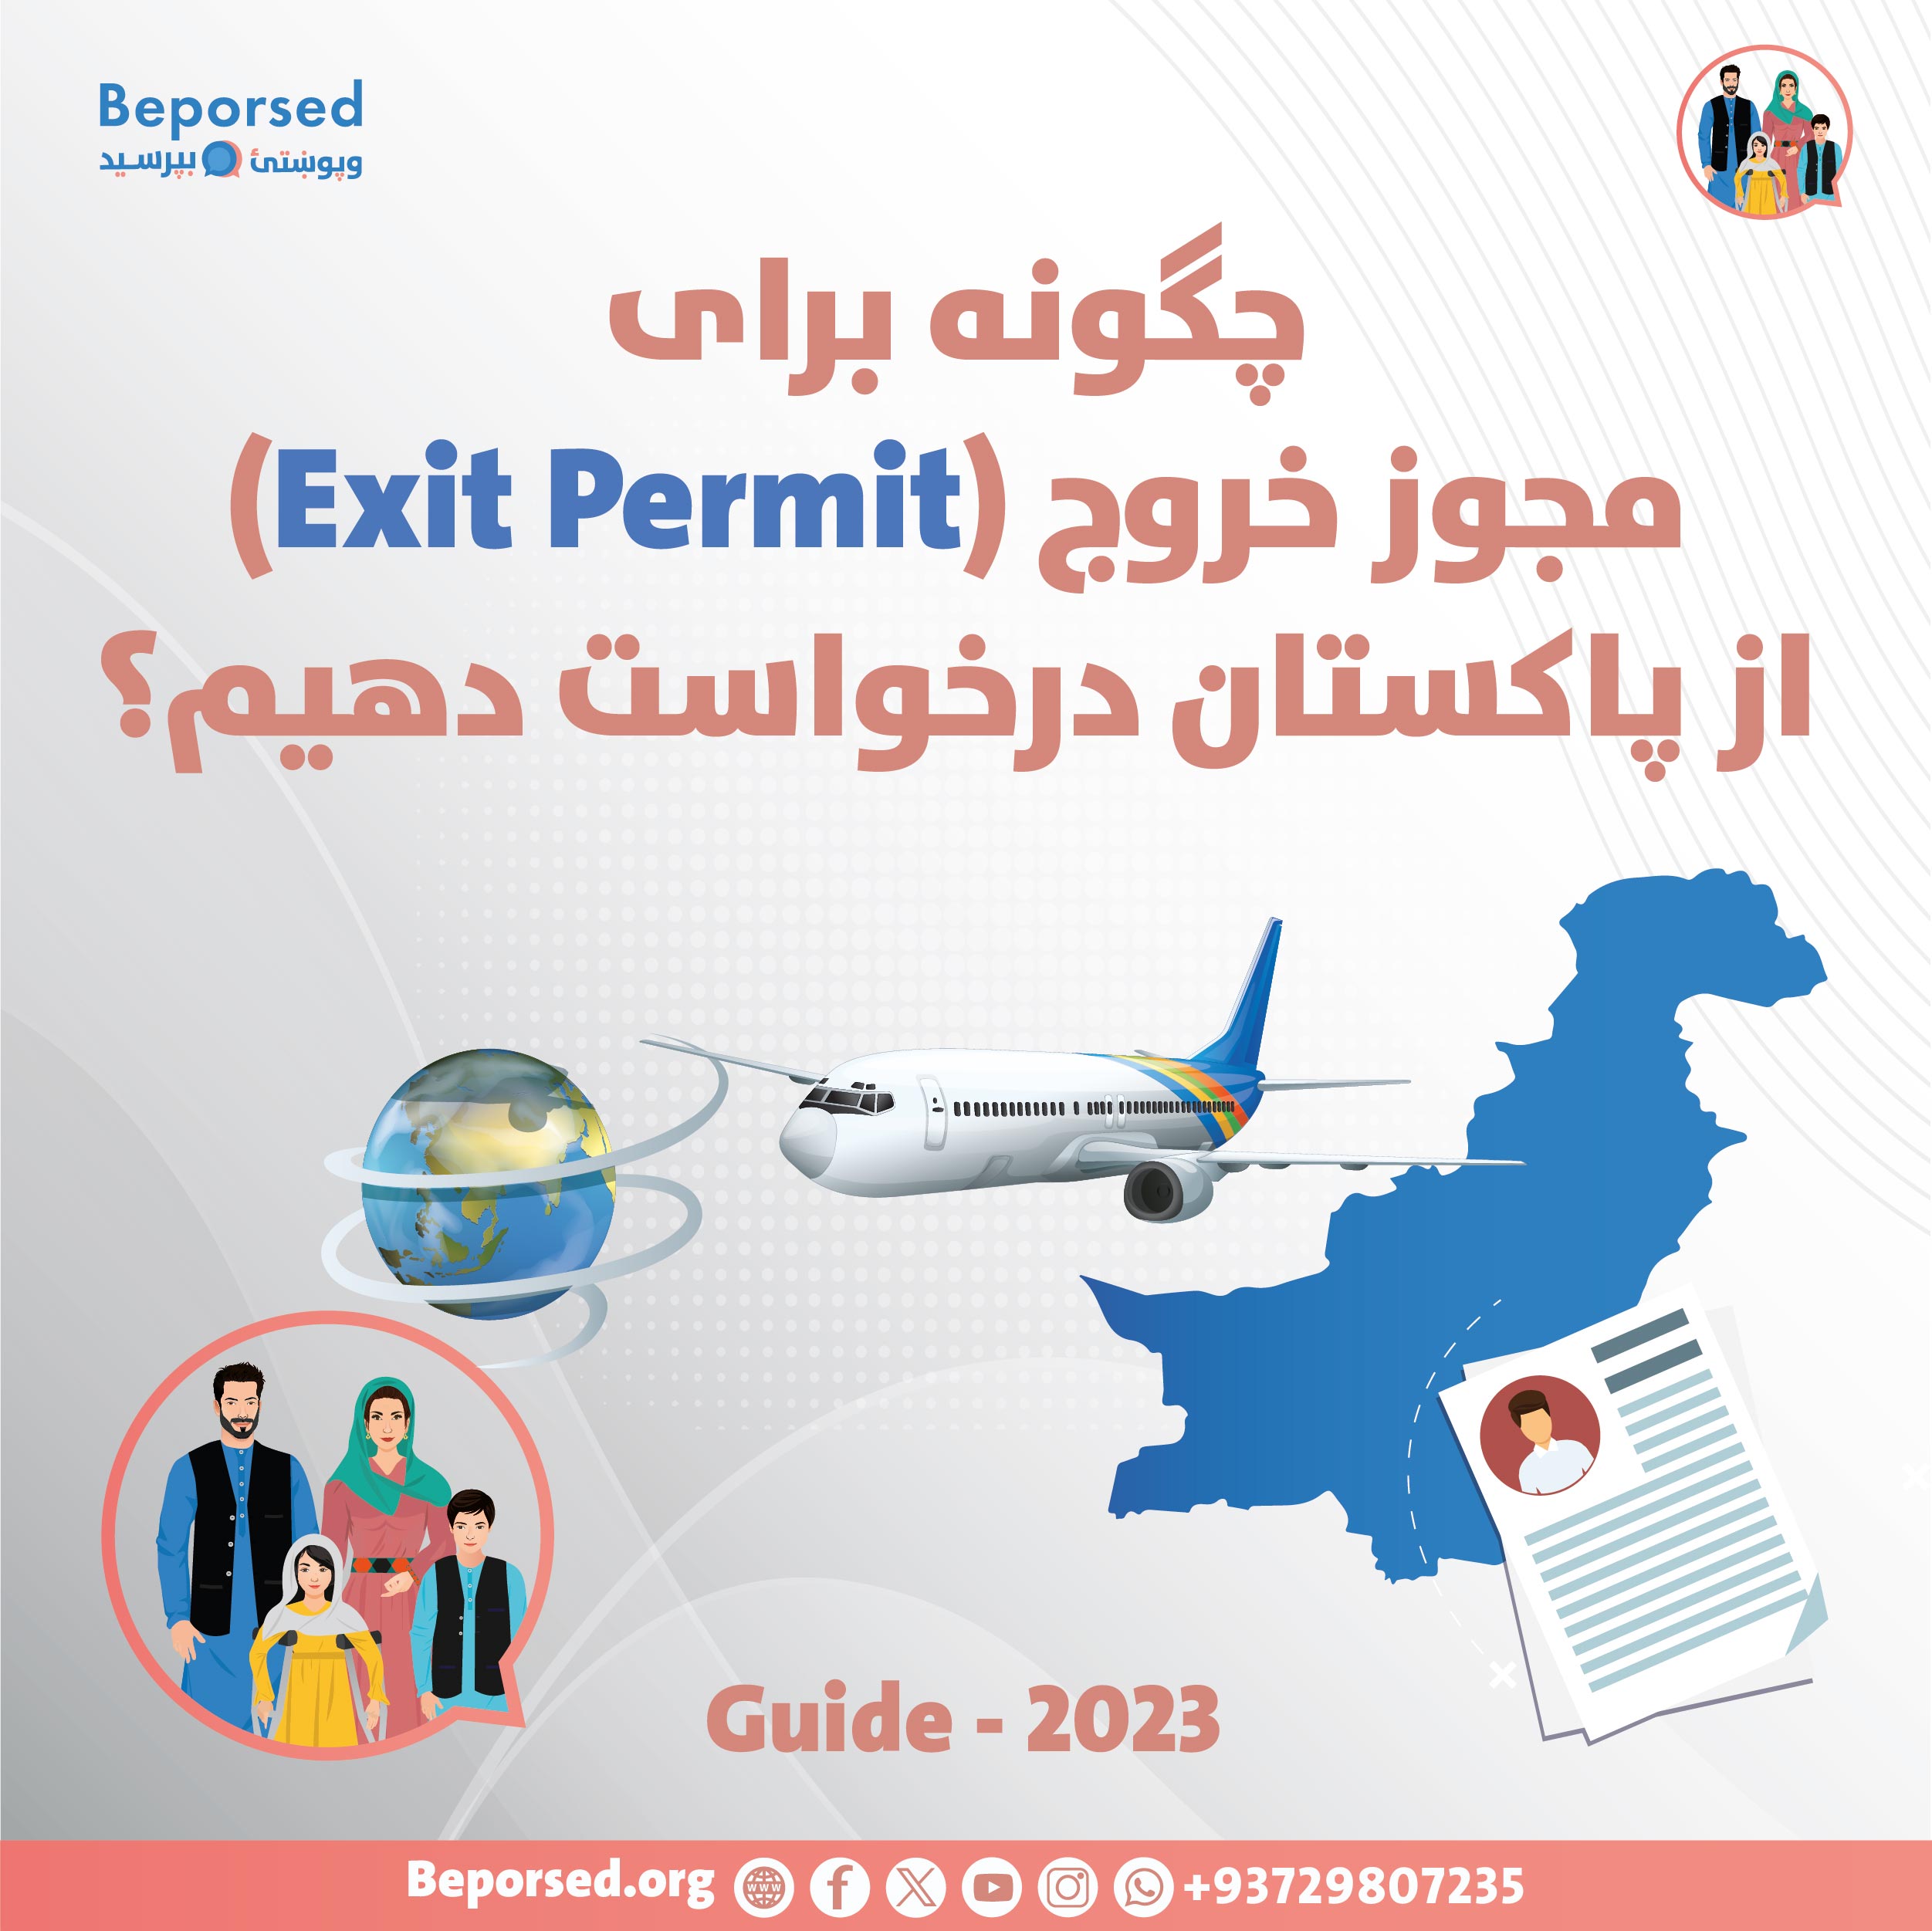 چگونه برای خروج از پاکستان Exit permit  درخواست دهیم-01.jpg